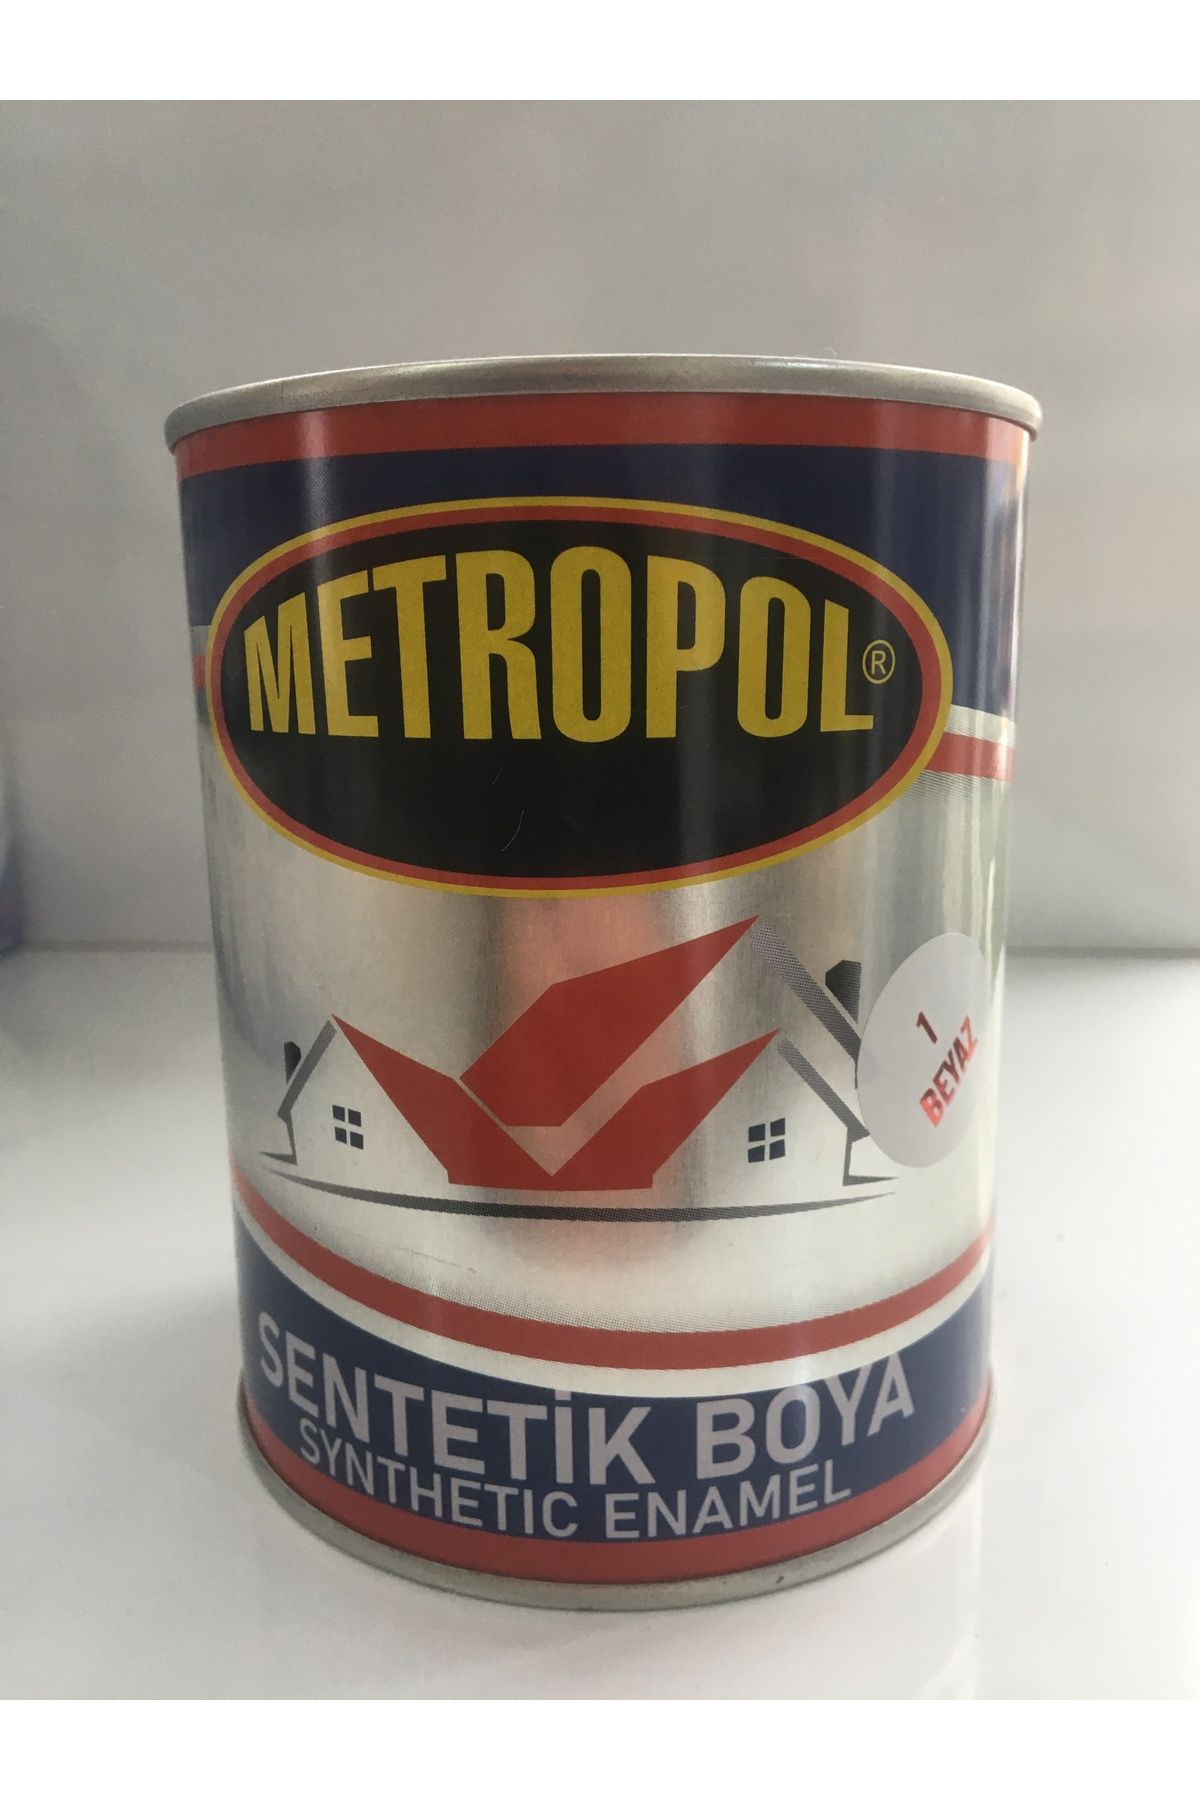 METROPOL Sentetik Boya  (Net775 Gr)